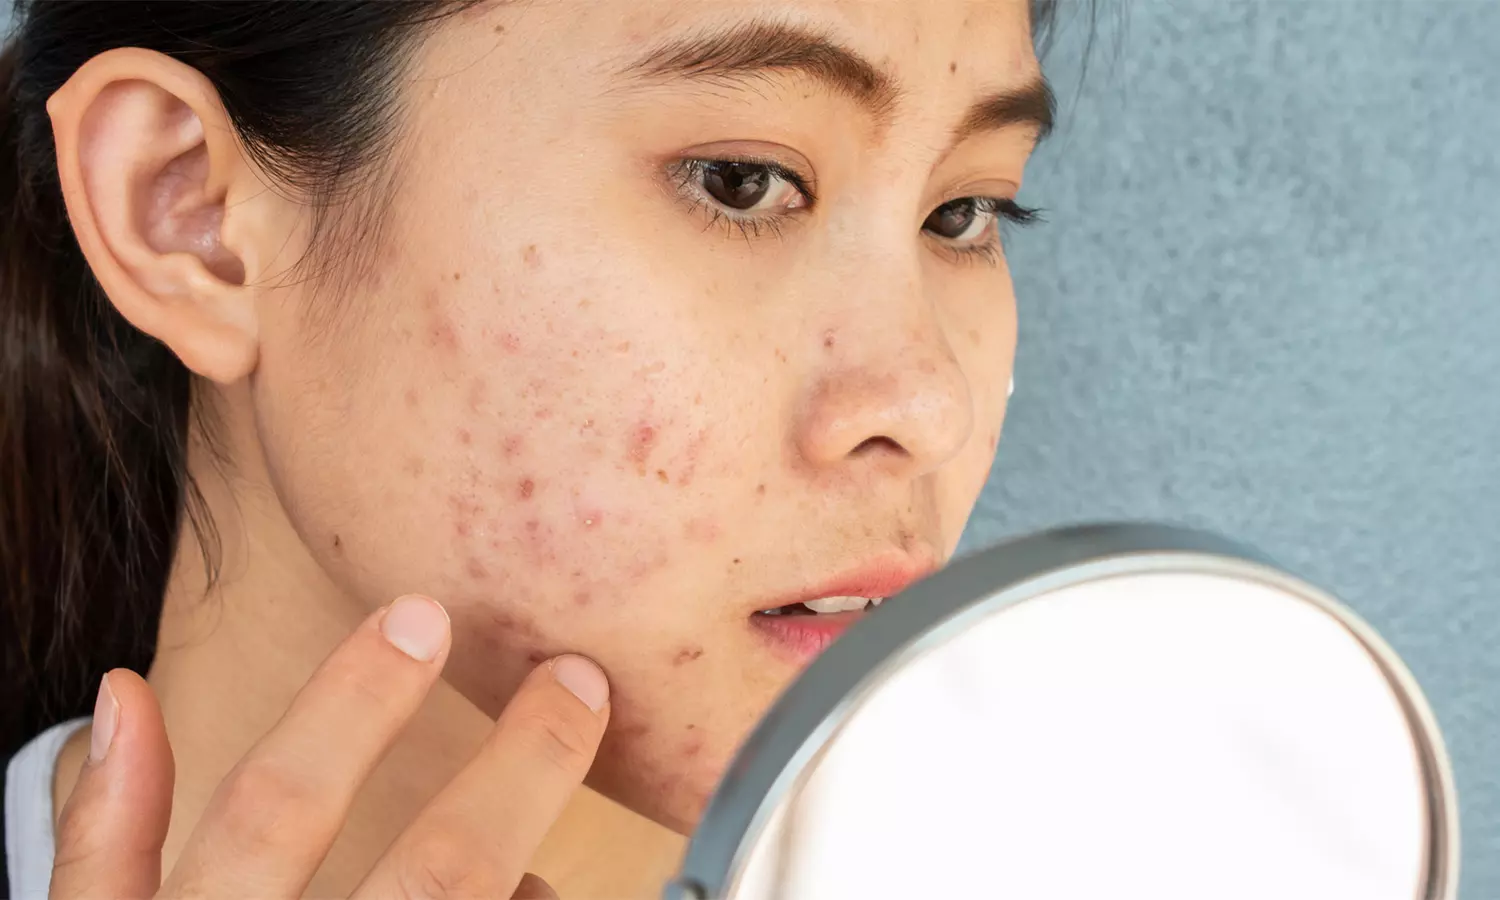 முகப்பருவை வராமல் தடுக்கும், வந்தால் கட்டுப்படுத்தும் வழிமுறைகள்... | Ways to prevent and control Pimples